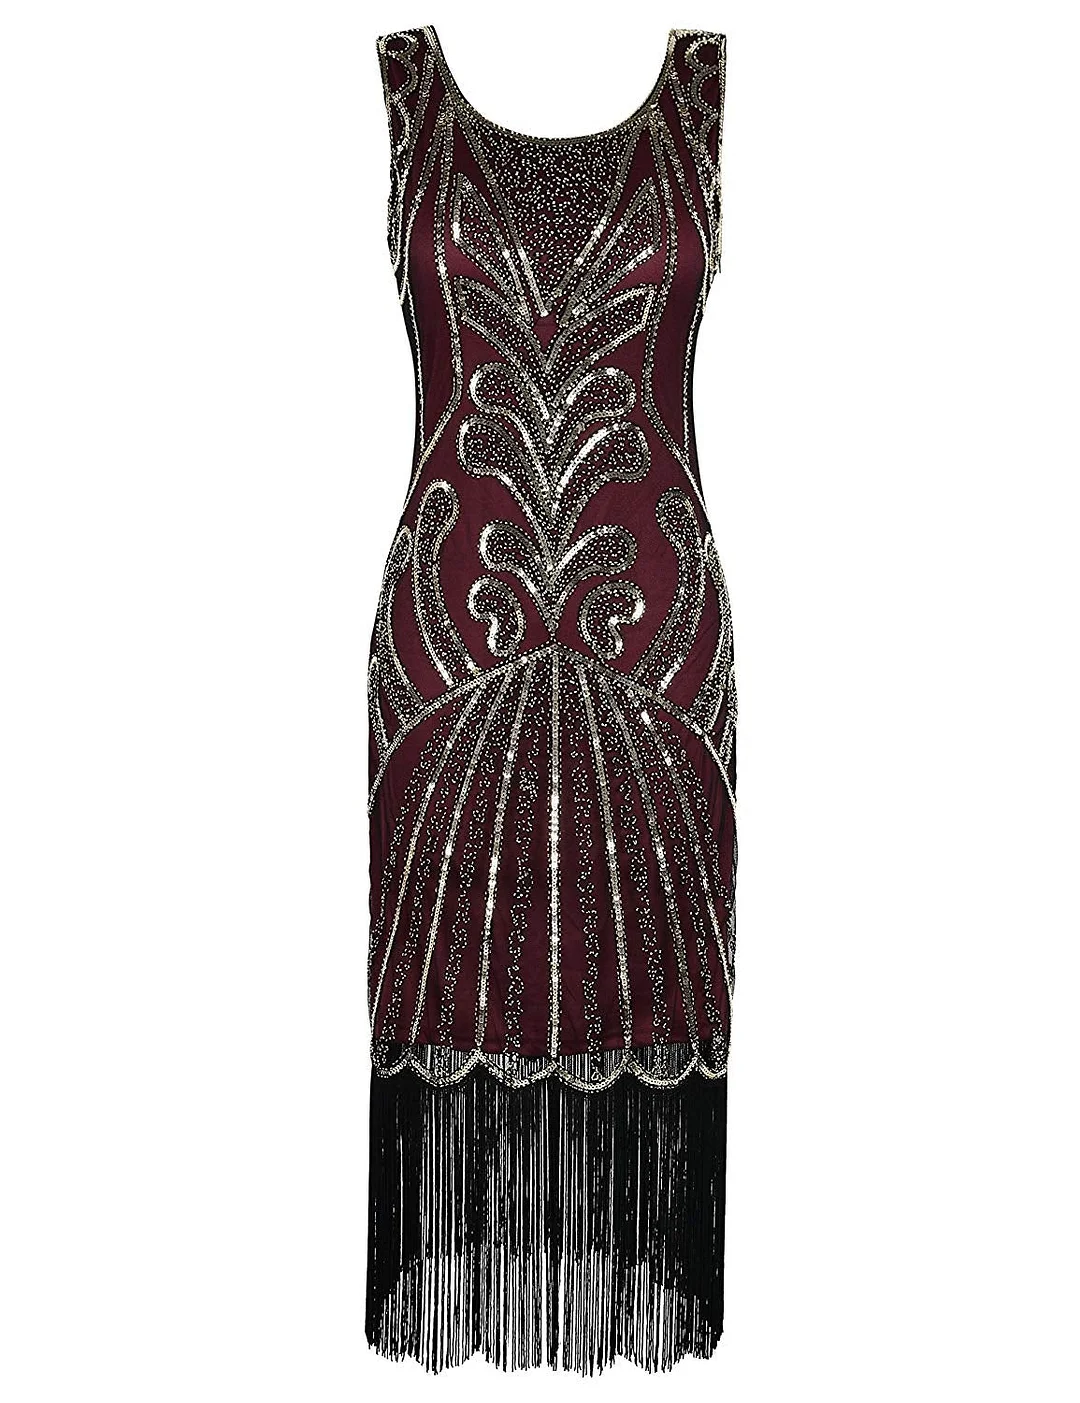 Women 1920s Dress Beads Art Deco Inspired Cocktail Flapper Dress